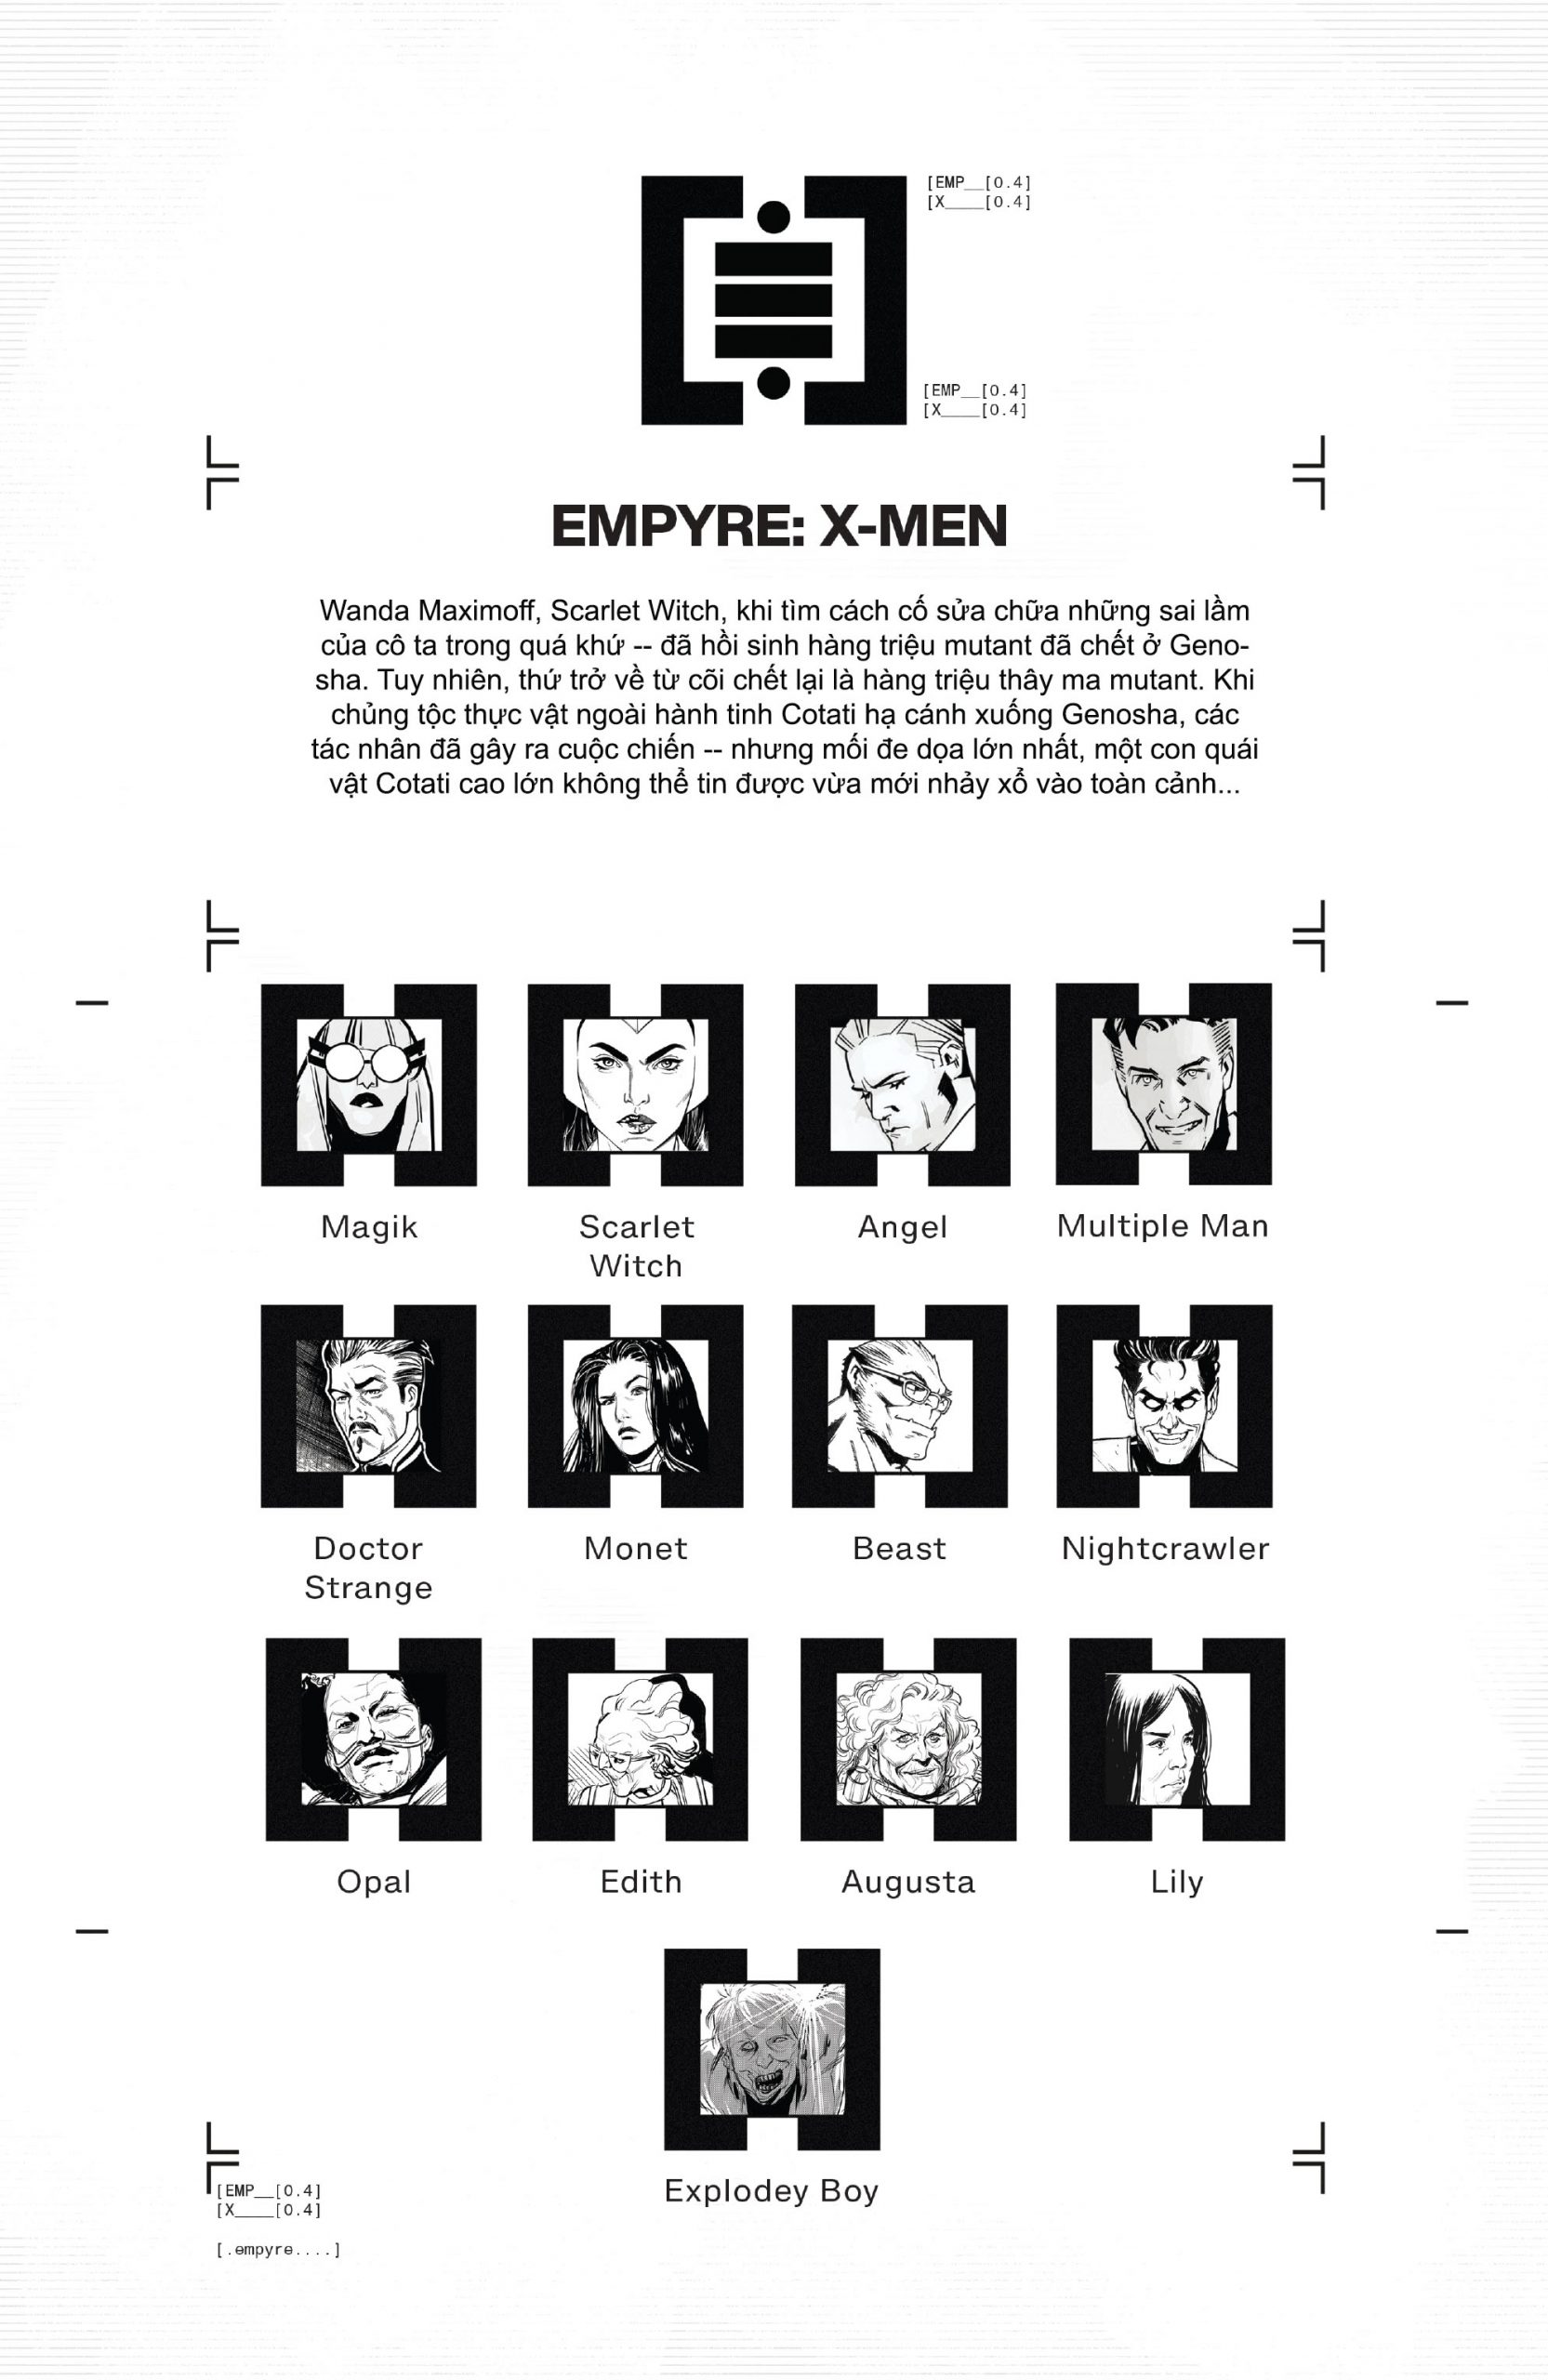 https://langgeek.net/wp-content/uploads/2021/12/Empyre-X-Men-2020-04-of-04-001-scaled.jpg